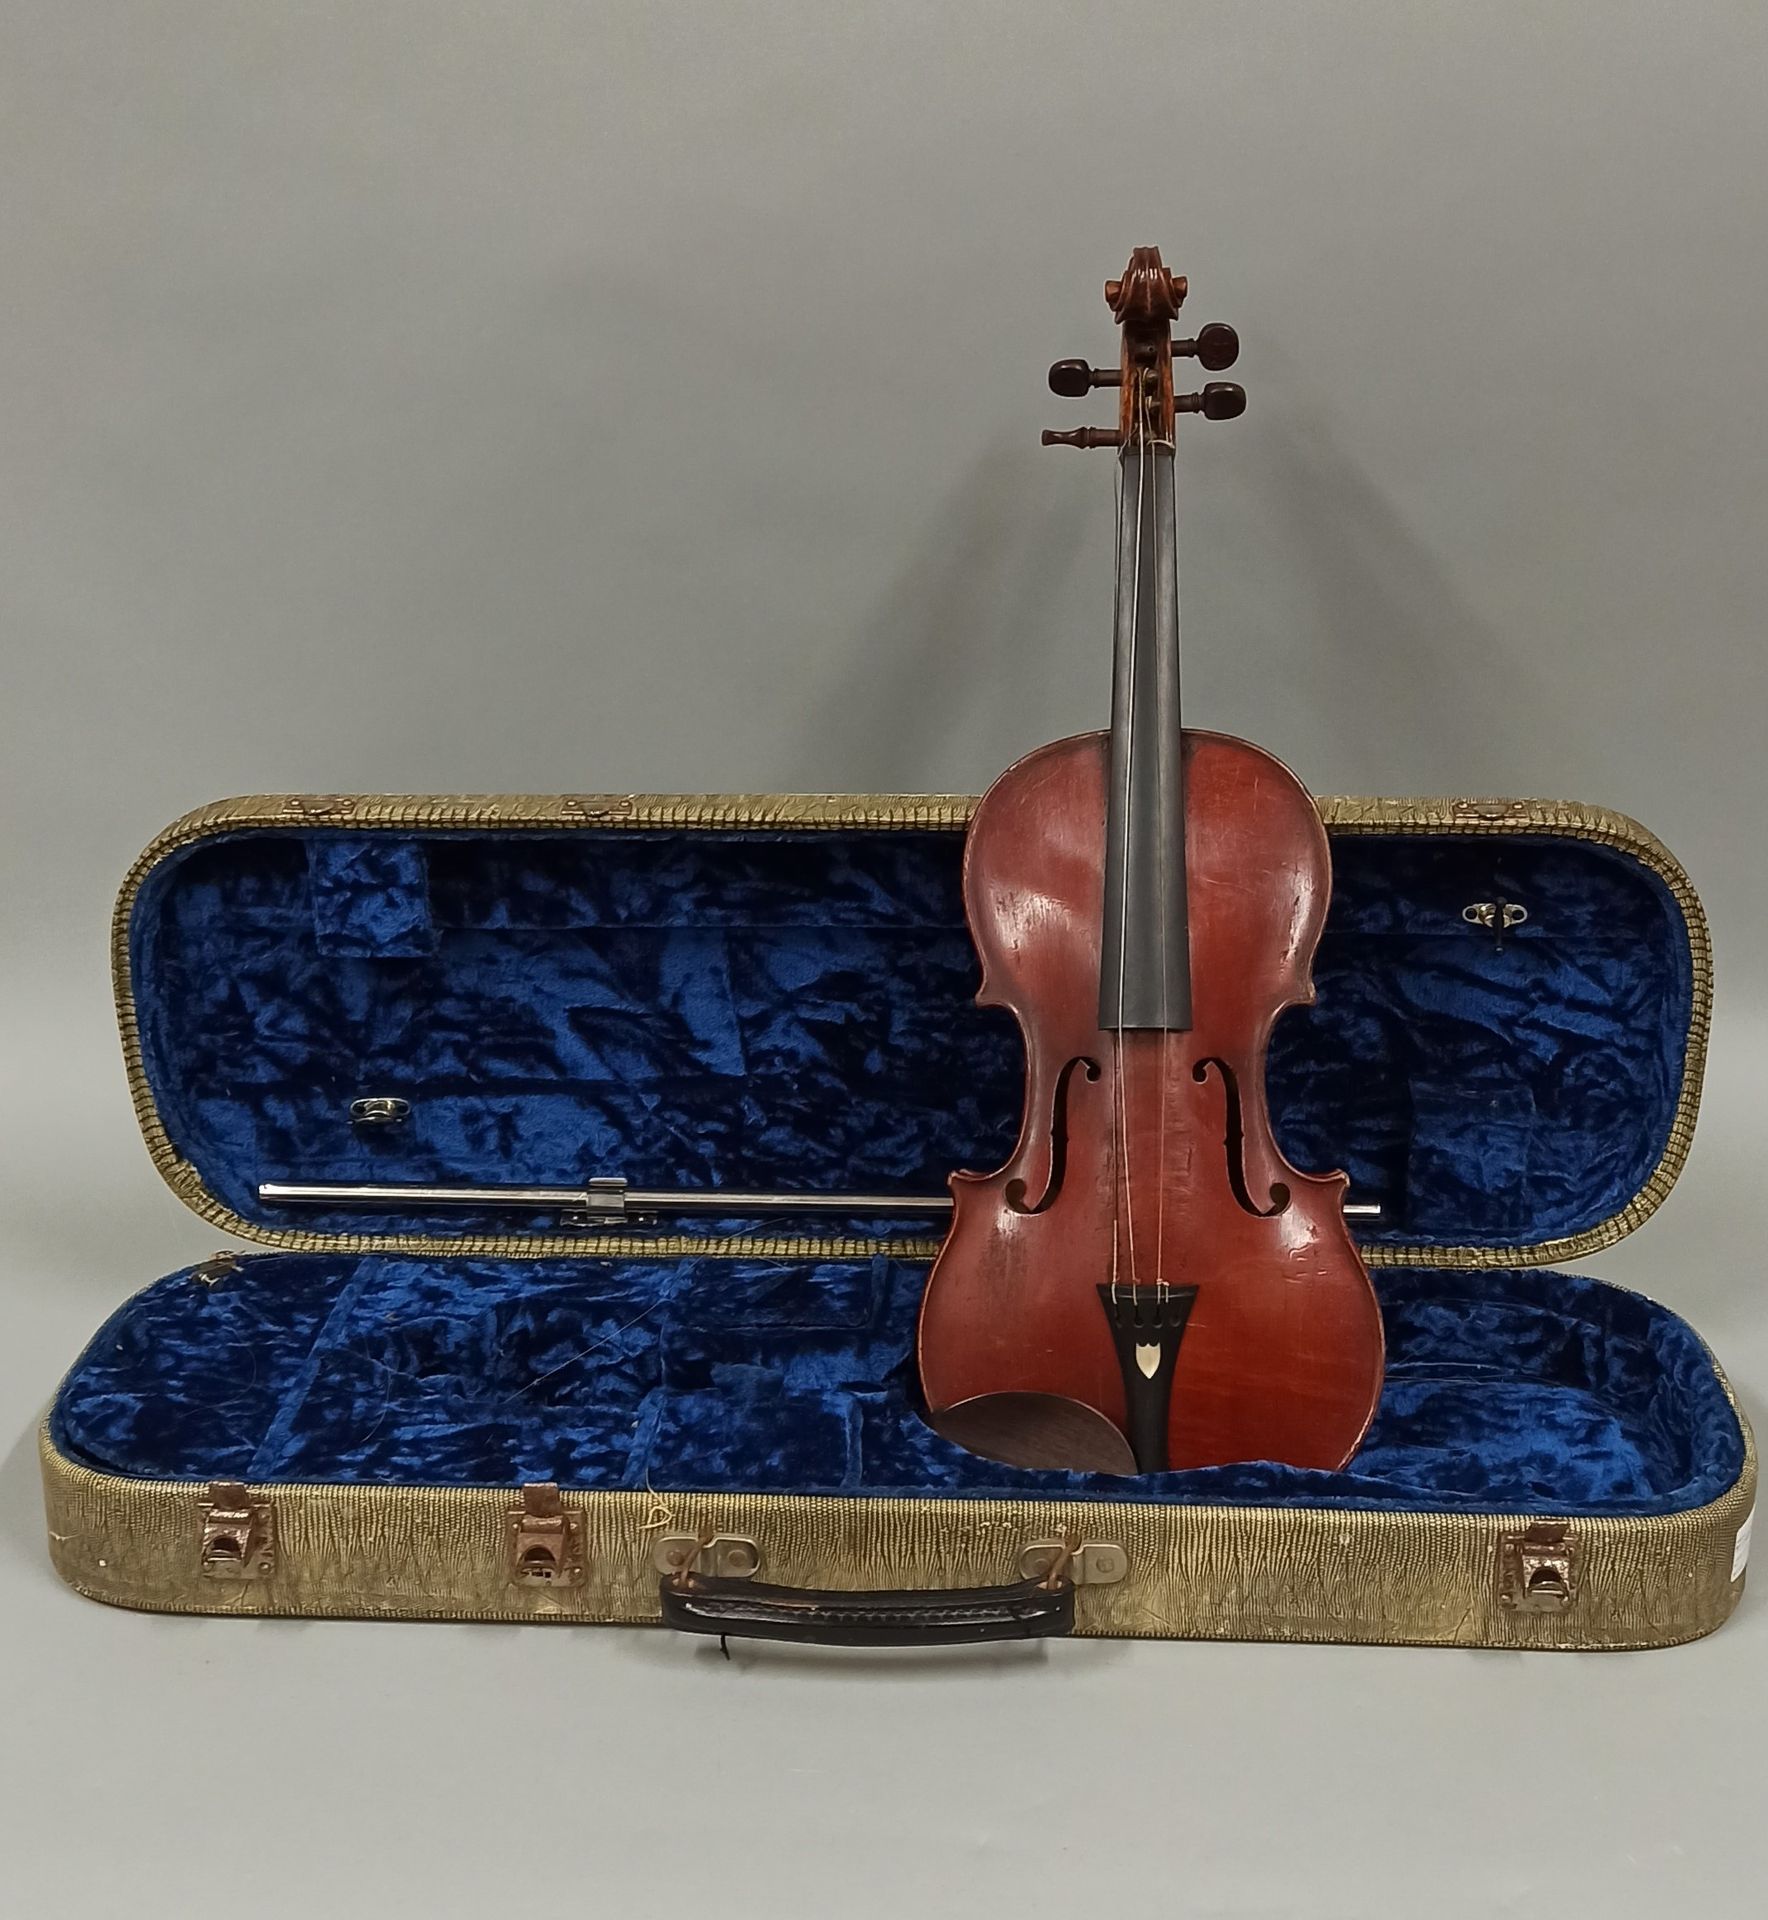 Null Violino di Jacques BARBE, realizzato all'inizio del XIX secolo

Marchio di &hellip;